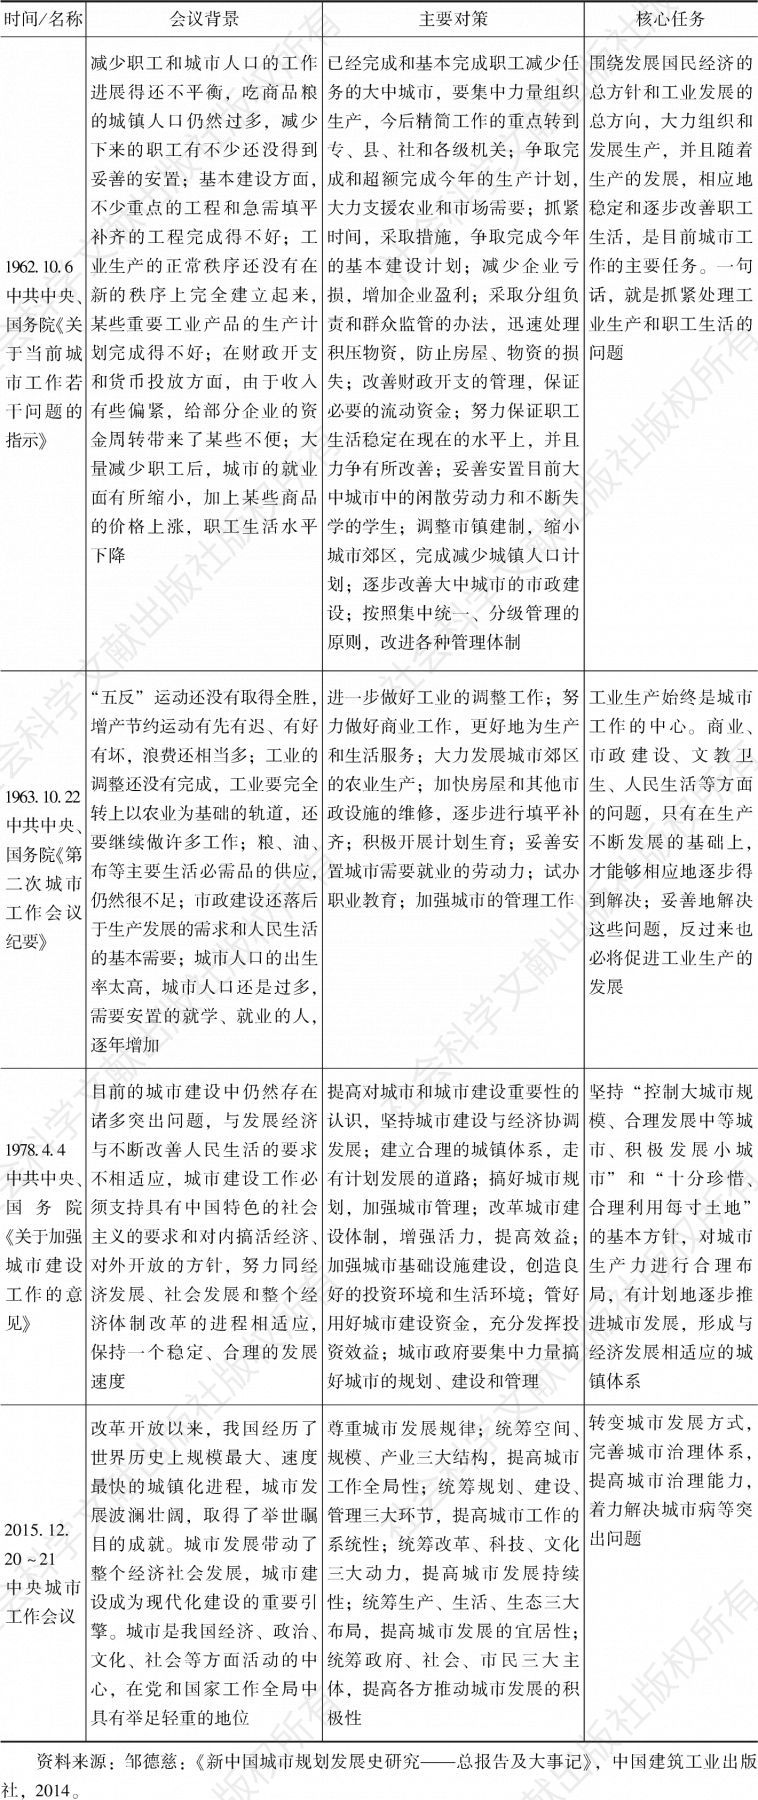 表1-1 中华人民共和国成立以来四次中央城市工作会议